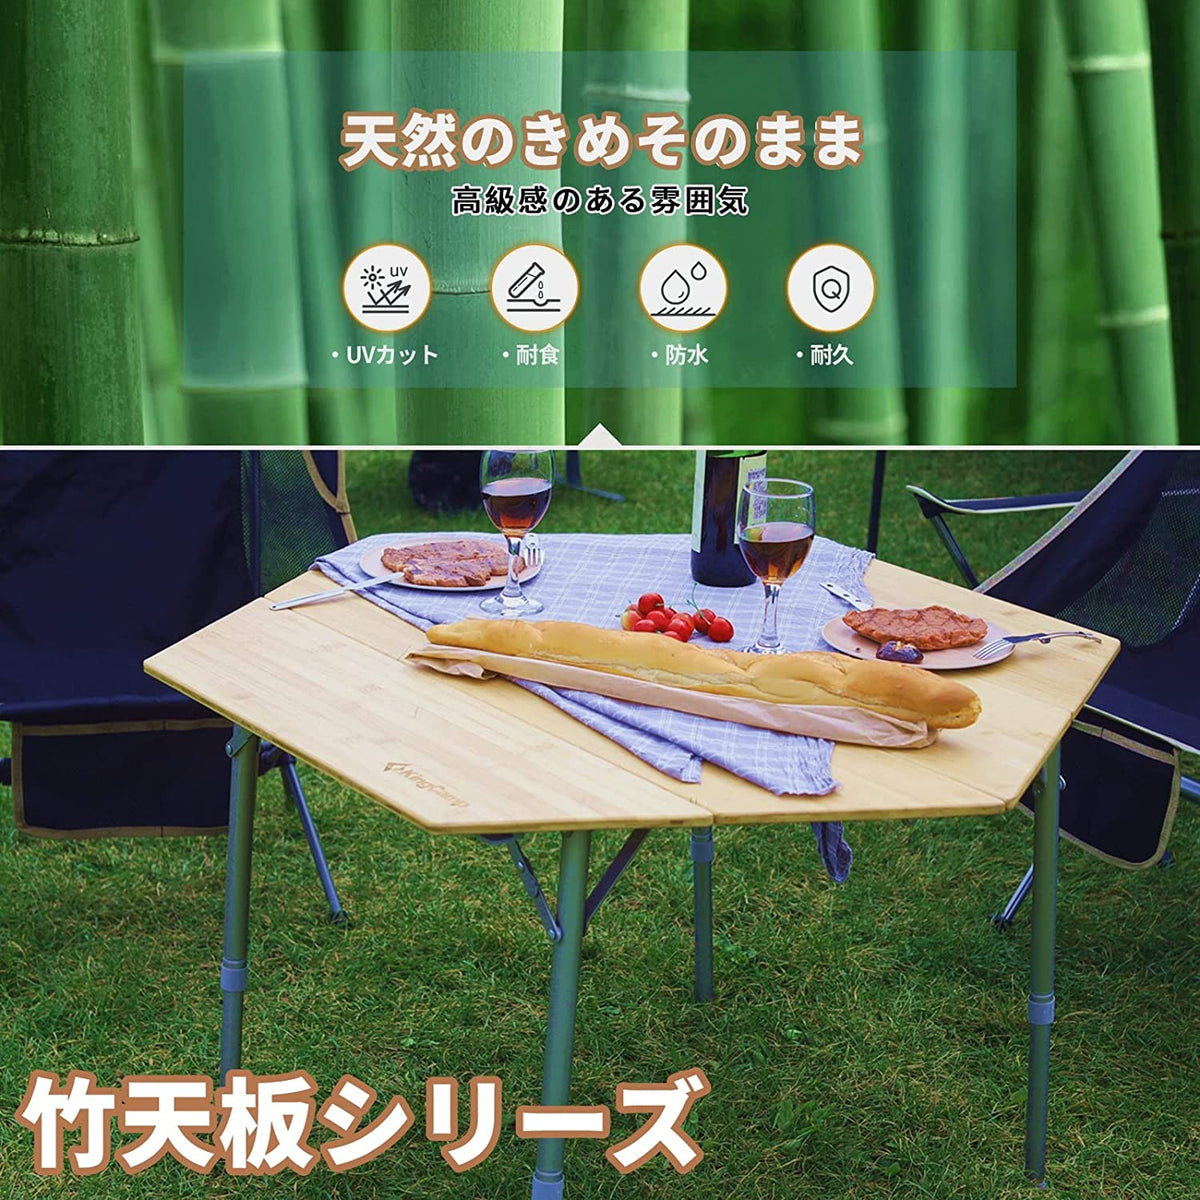 日本初六角テーブル】 KingCamp アウトドアテーブル 六角型 竹製天板